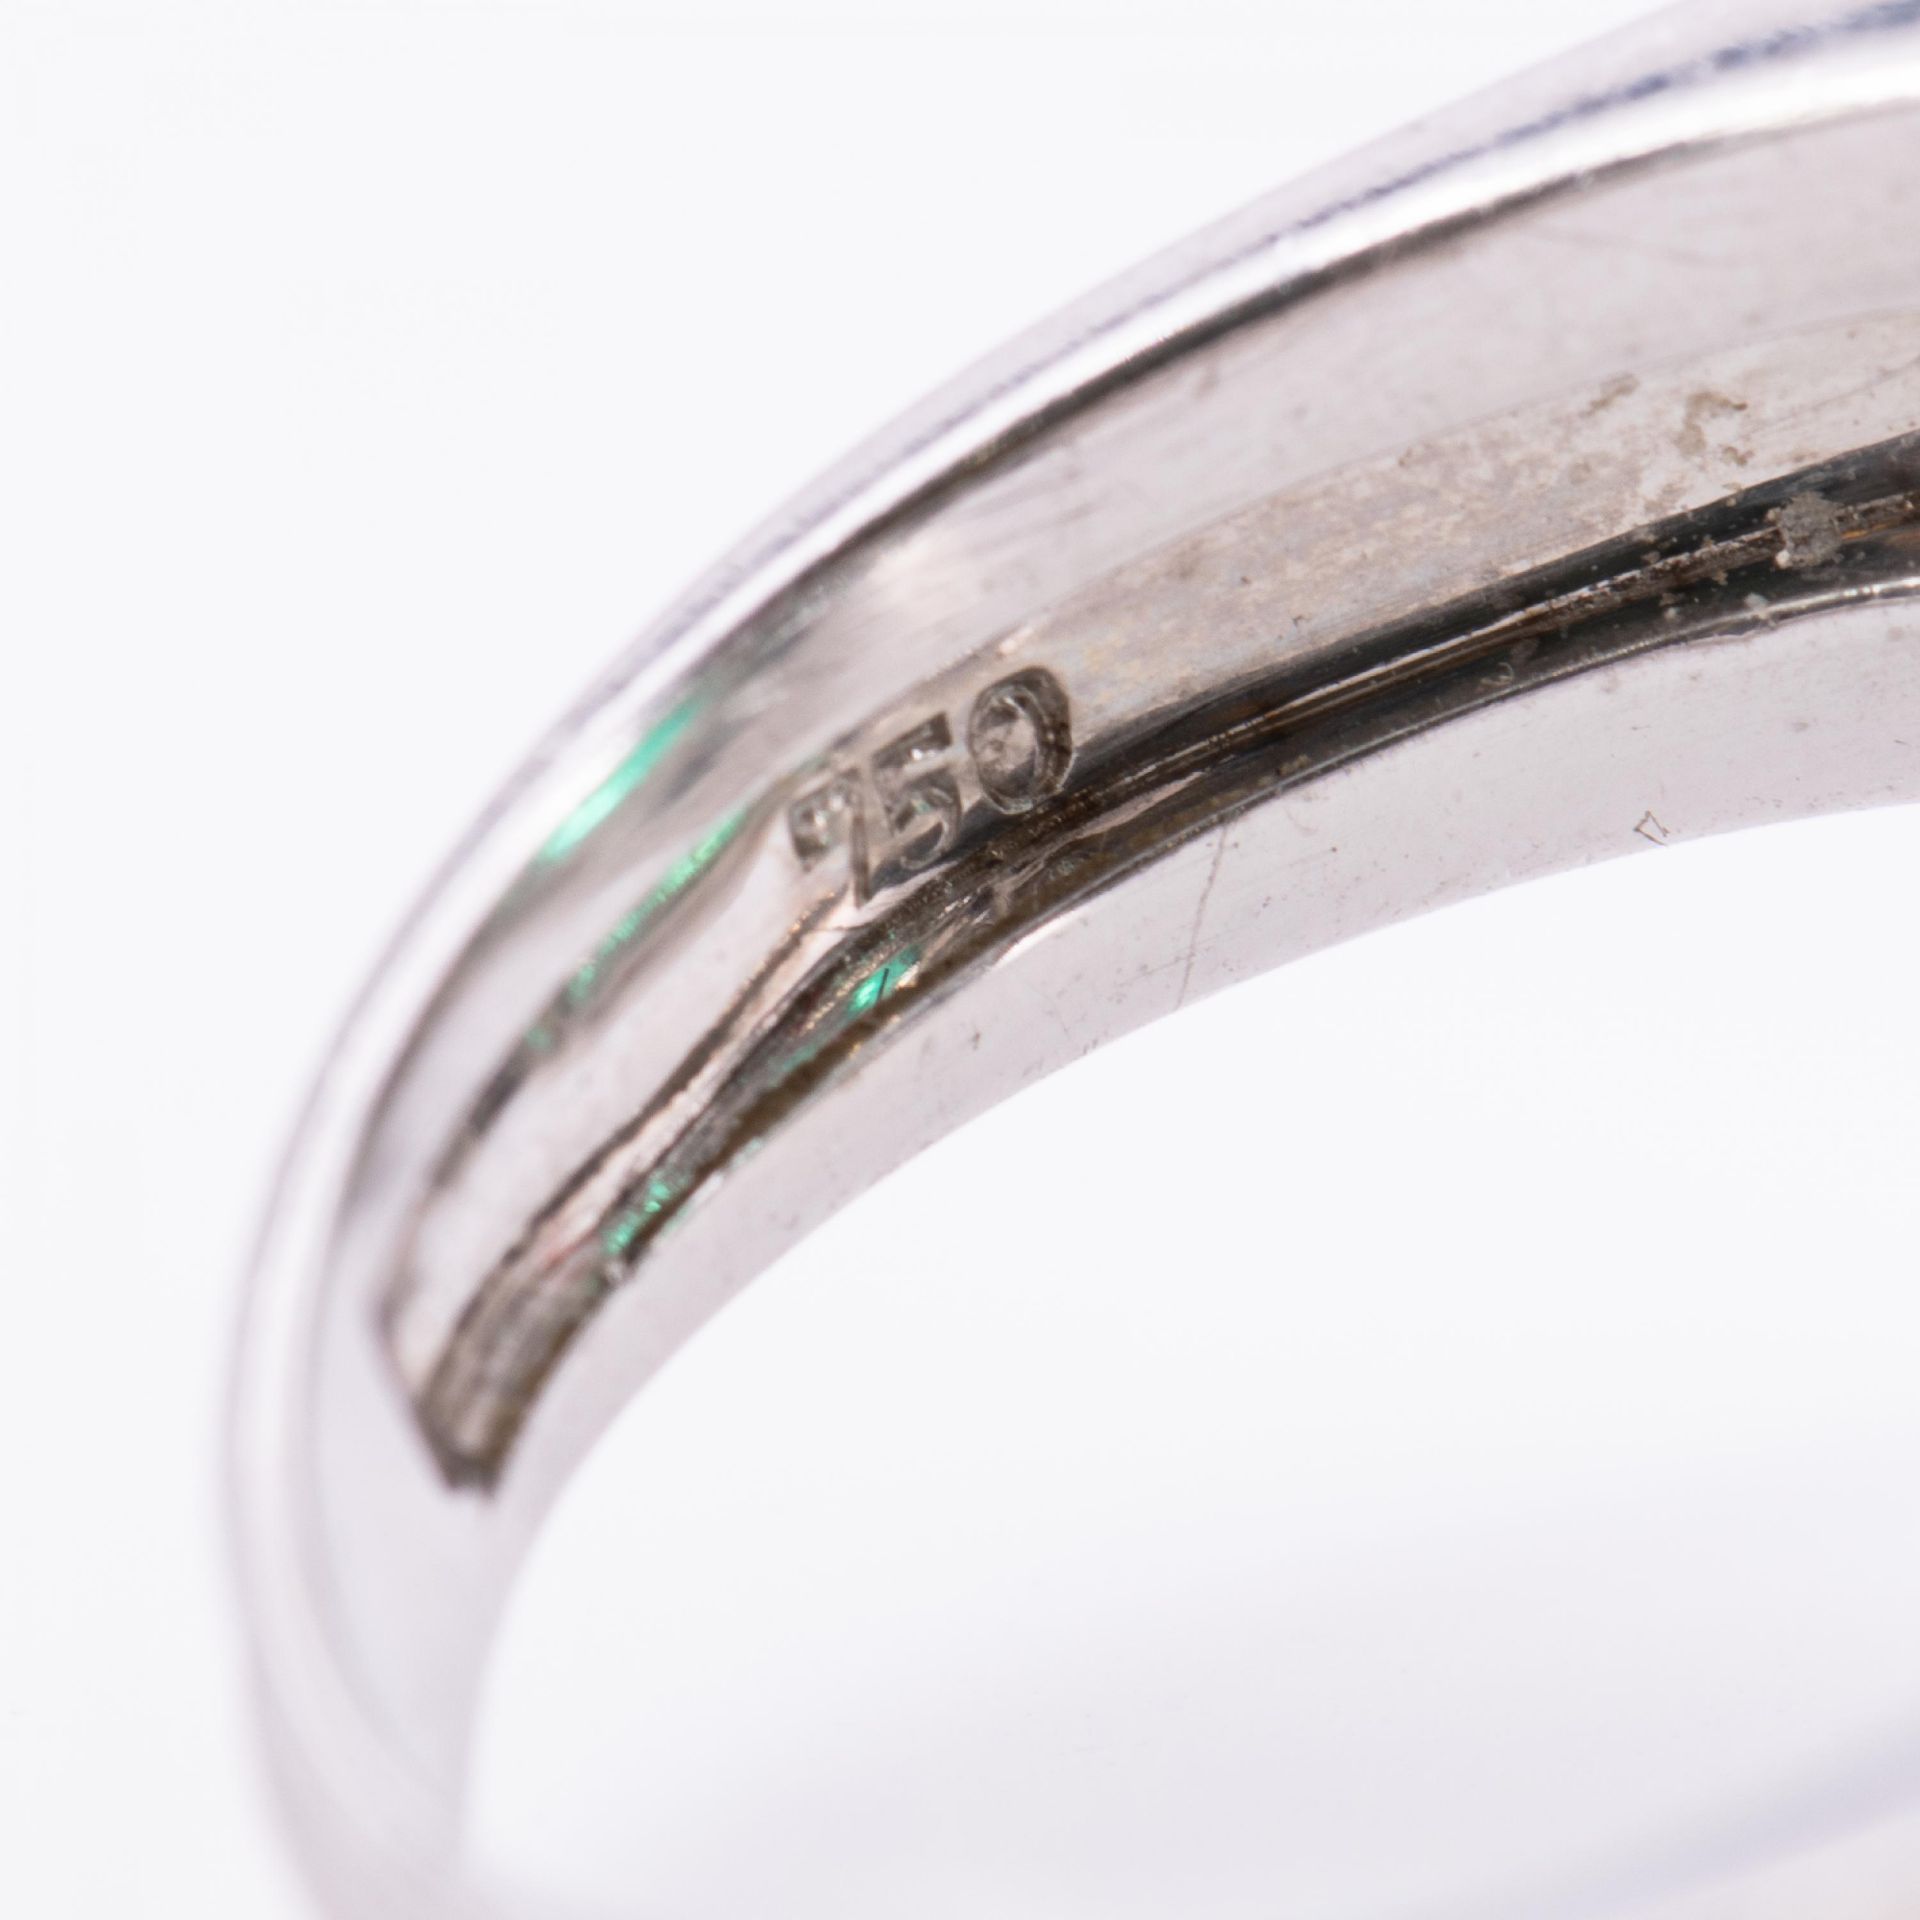 Smaragd-Diamant-Ring - Bild 5 aus 5